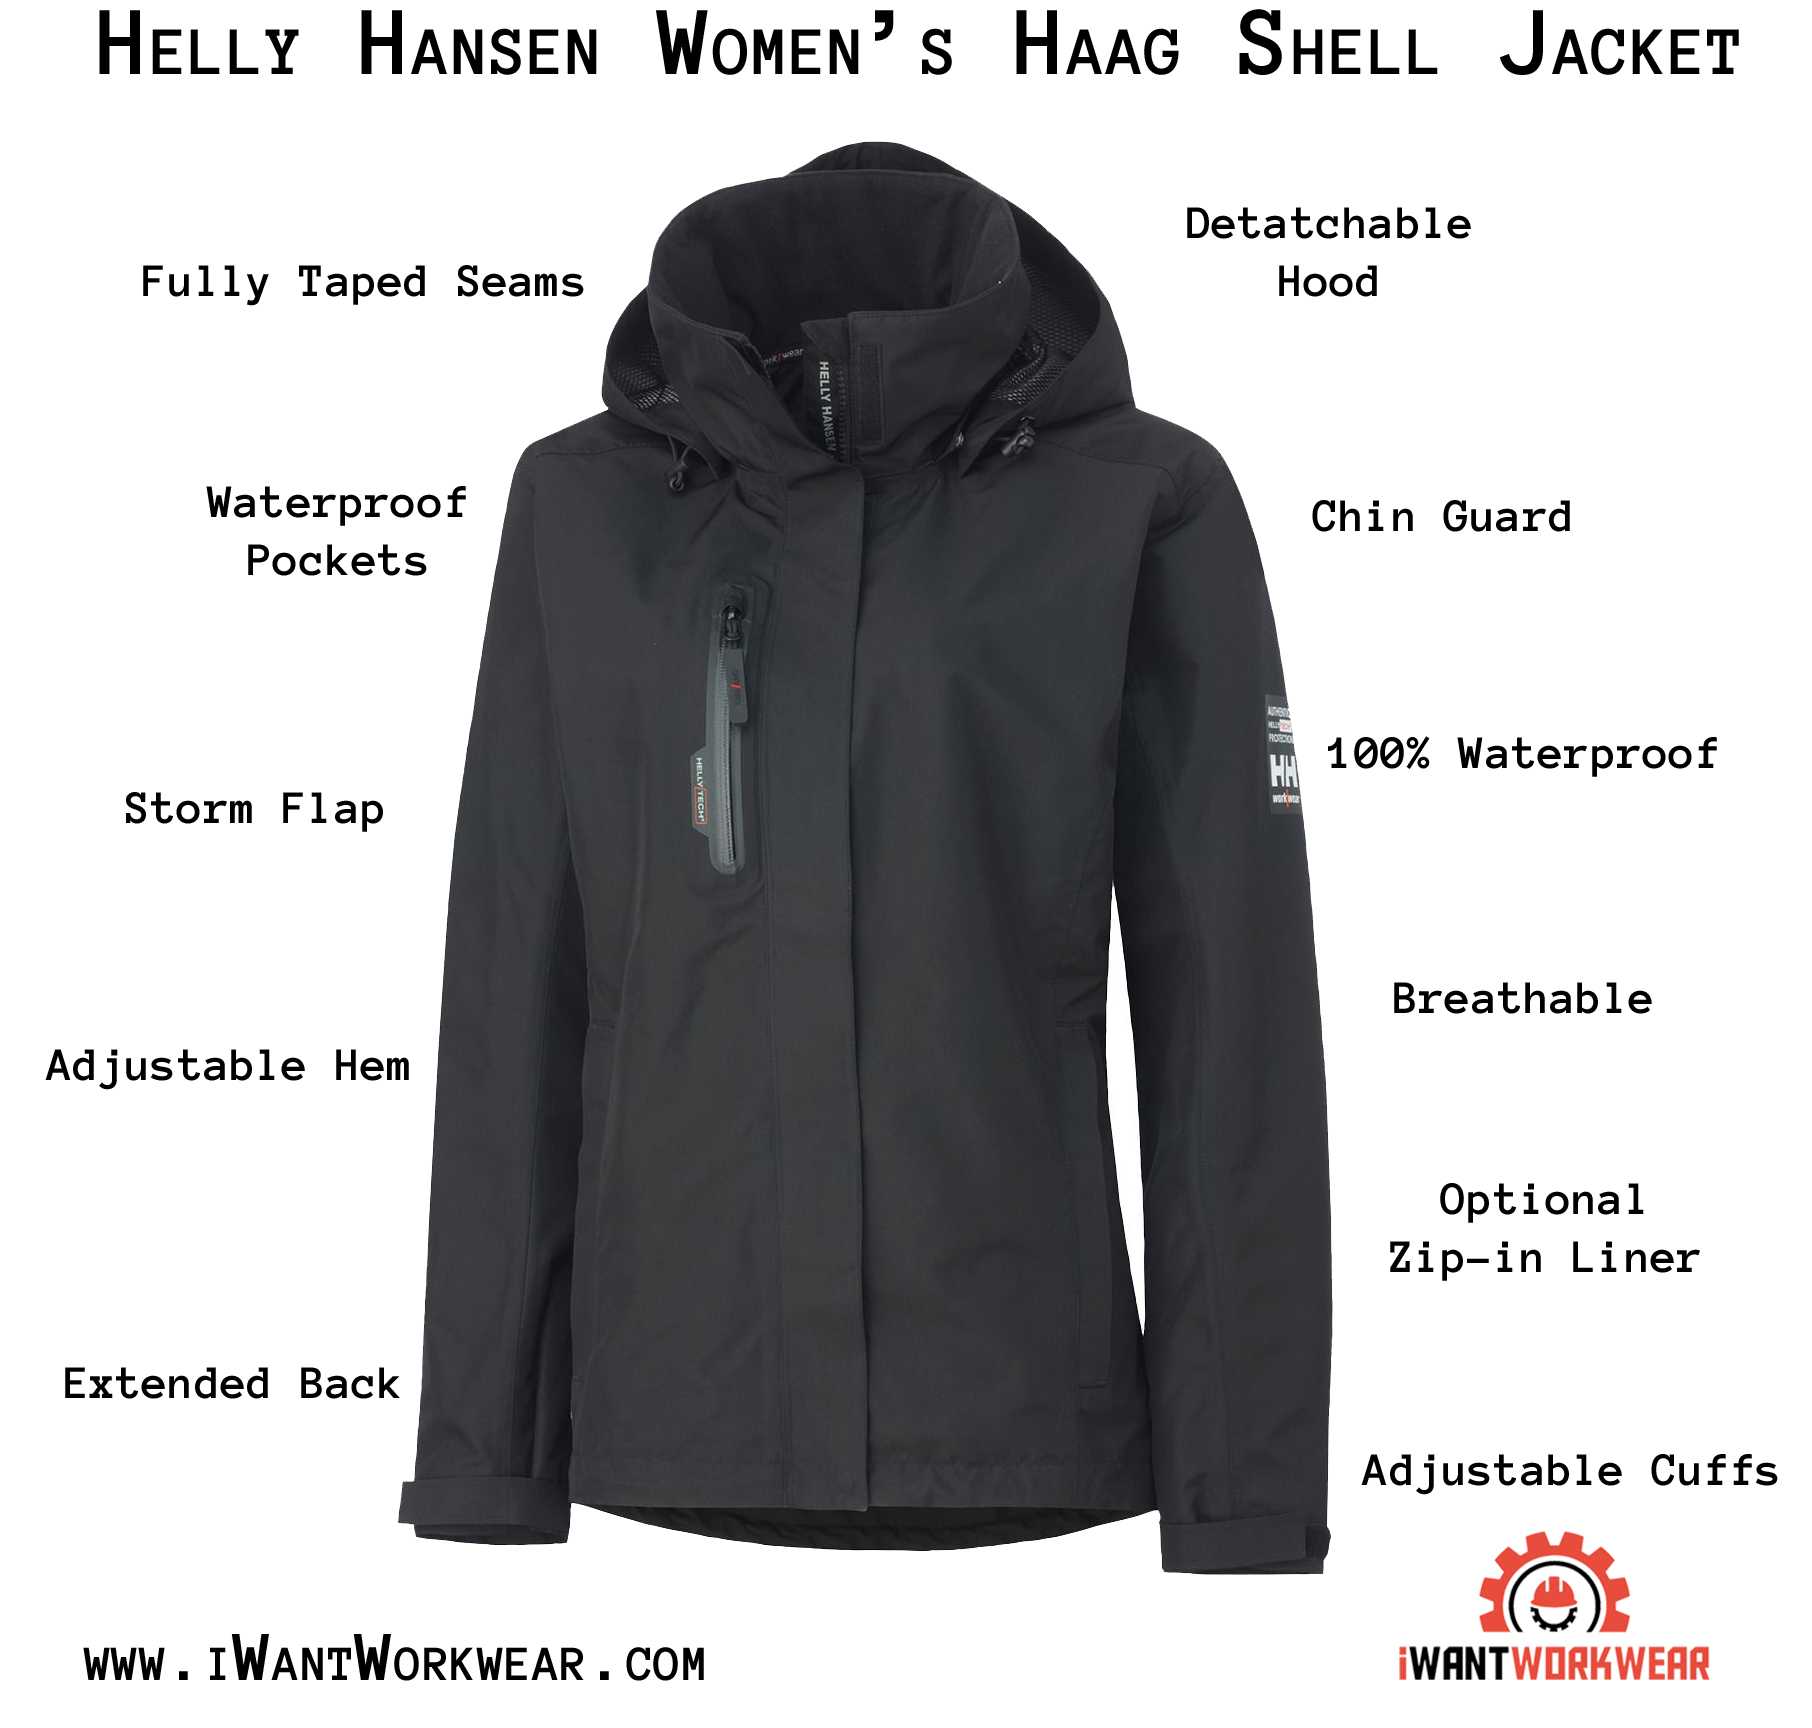 74044 Women's Manchester Shell Jacket - Helly Hansen